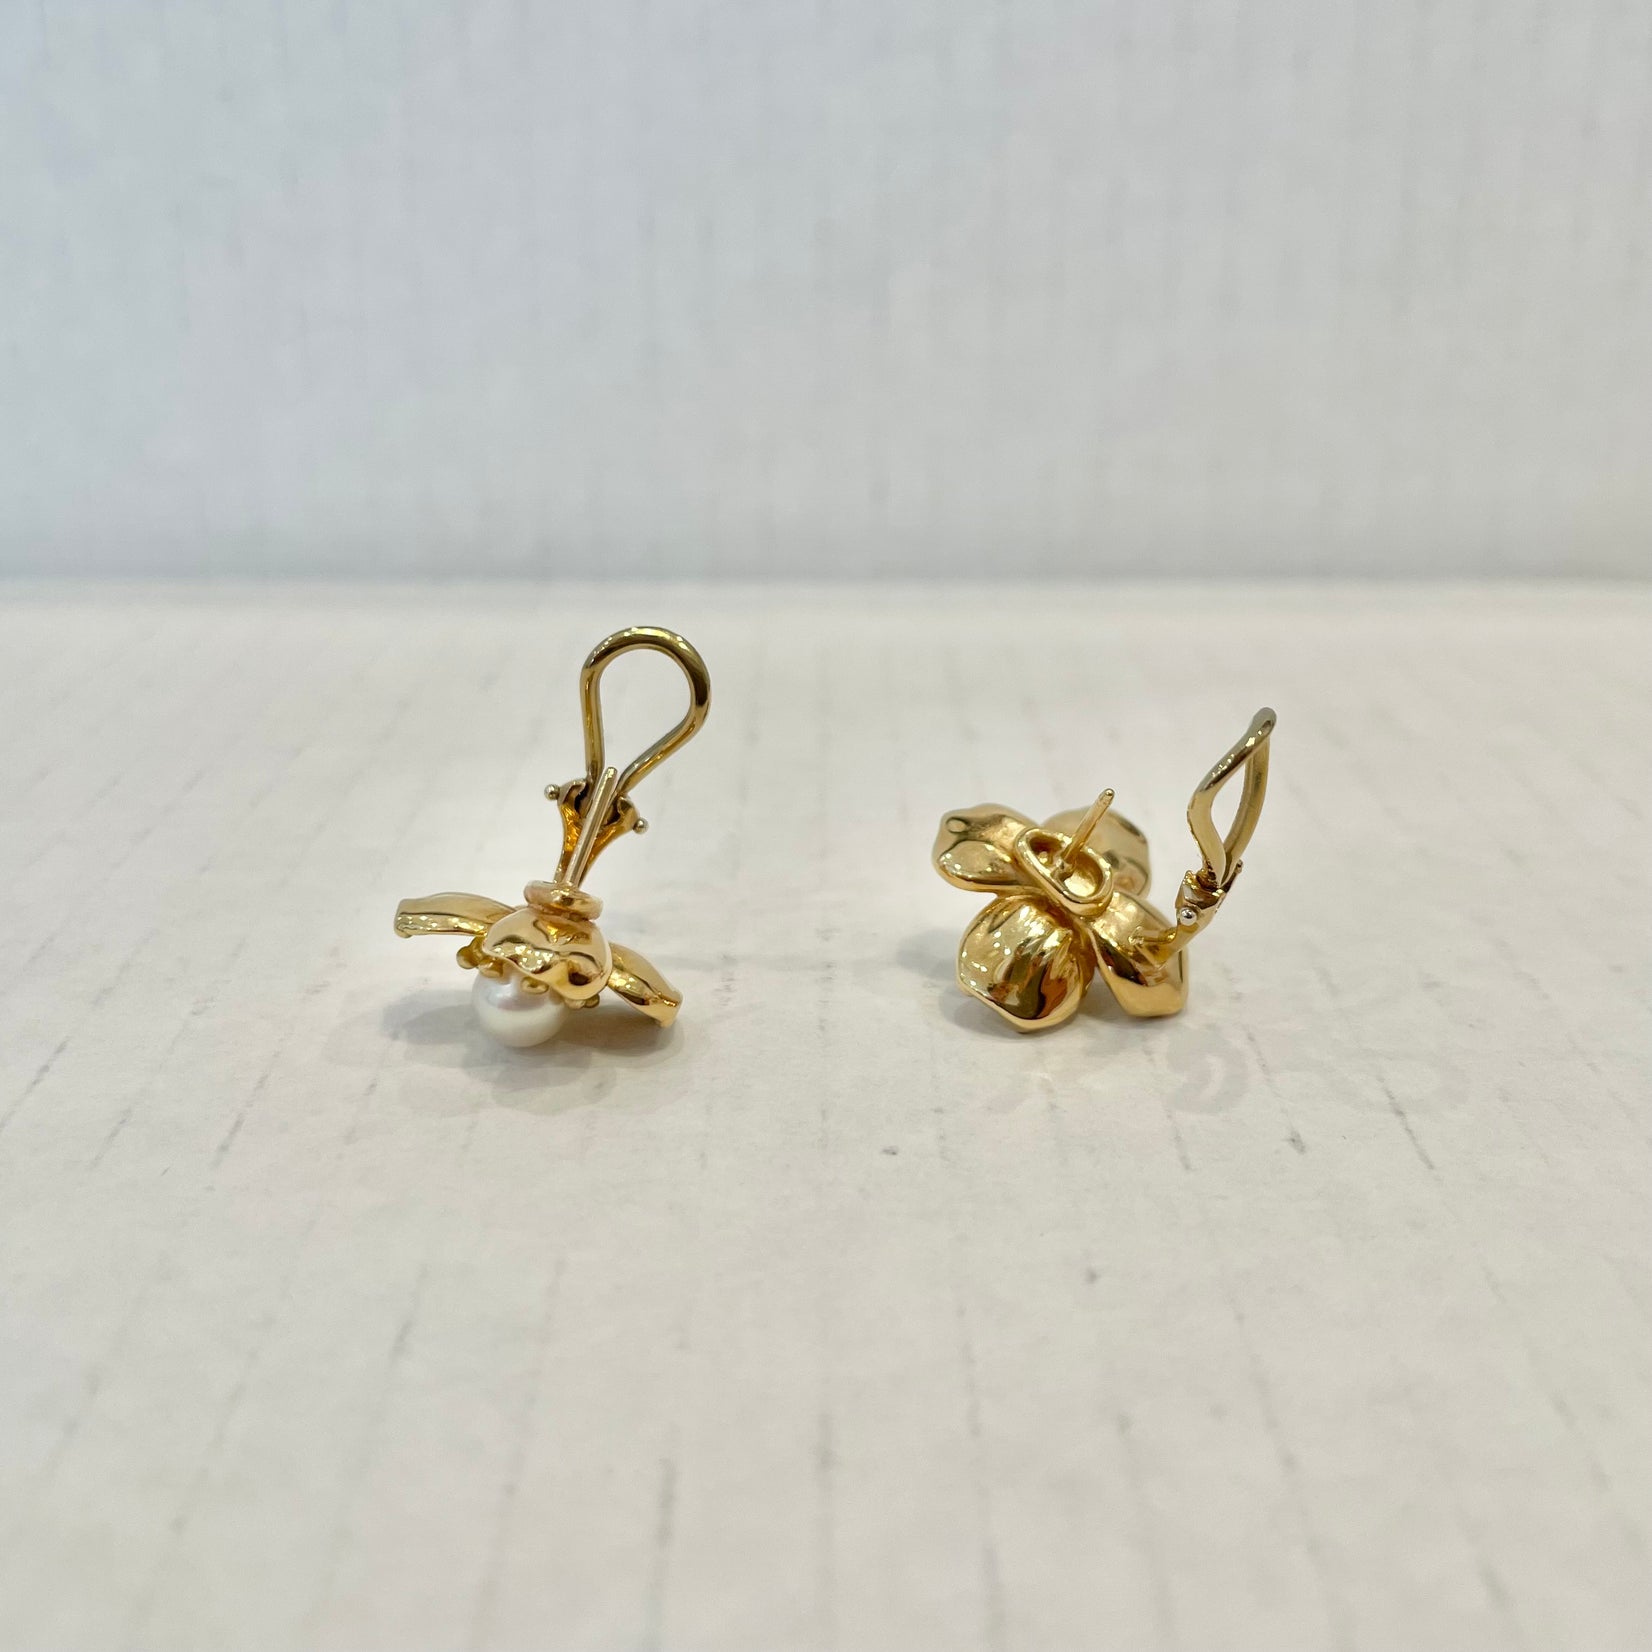 Tiffany & Co. Dogwood & Pearl Earrings in 18 Karat Yellow Gold